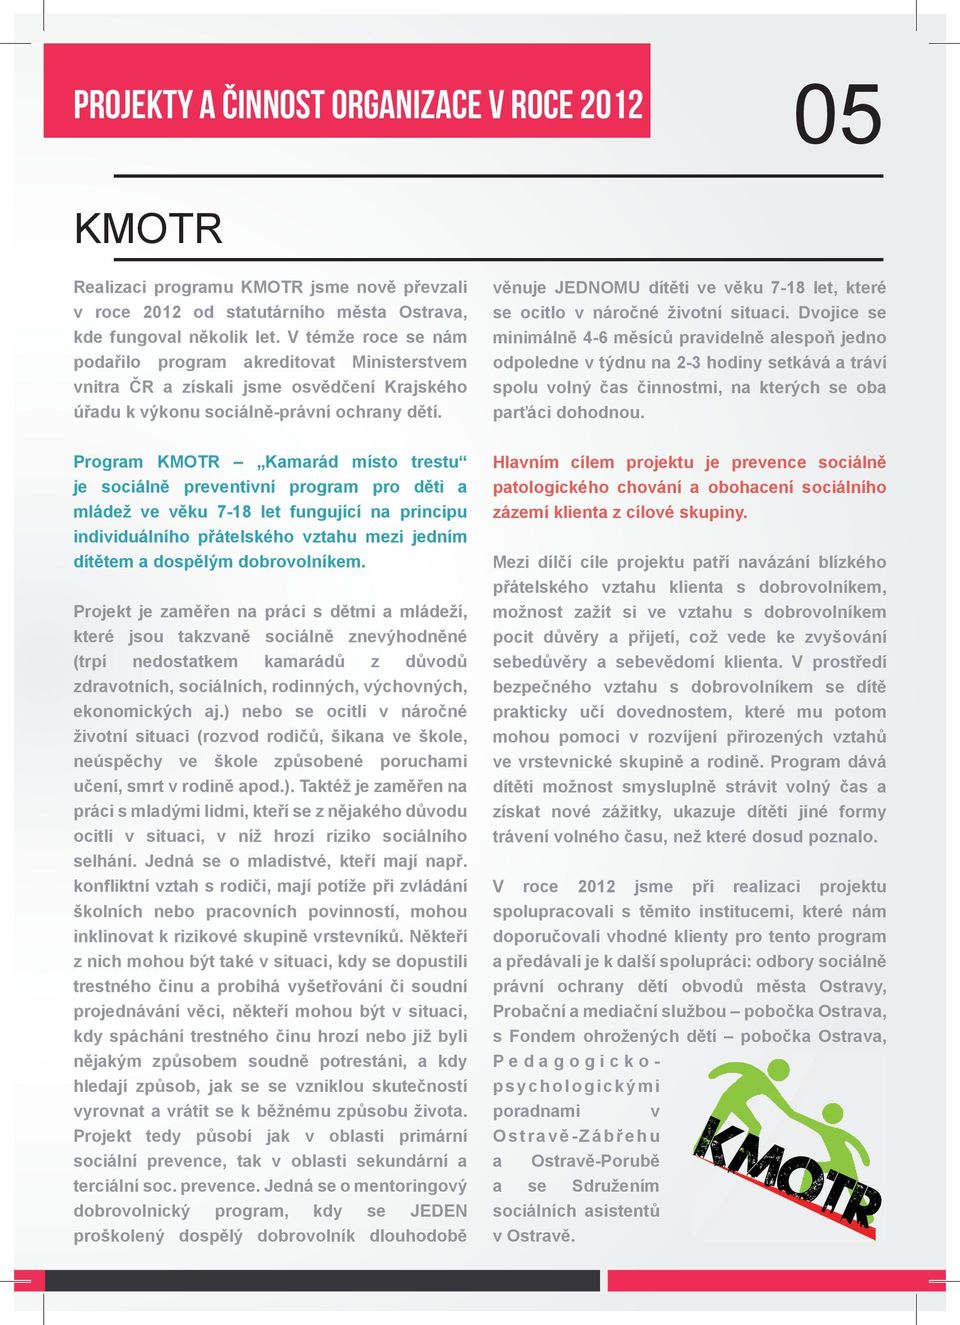 Program KMOTR Kamarád místo trestu je sociálně preventivní program pro děti a mládež ve věku 7-18 let fungující na principu individuálního přátelského vztahu mezi jedním dítětem a dospělým